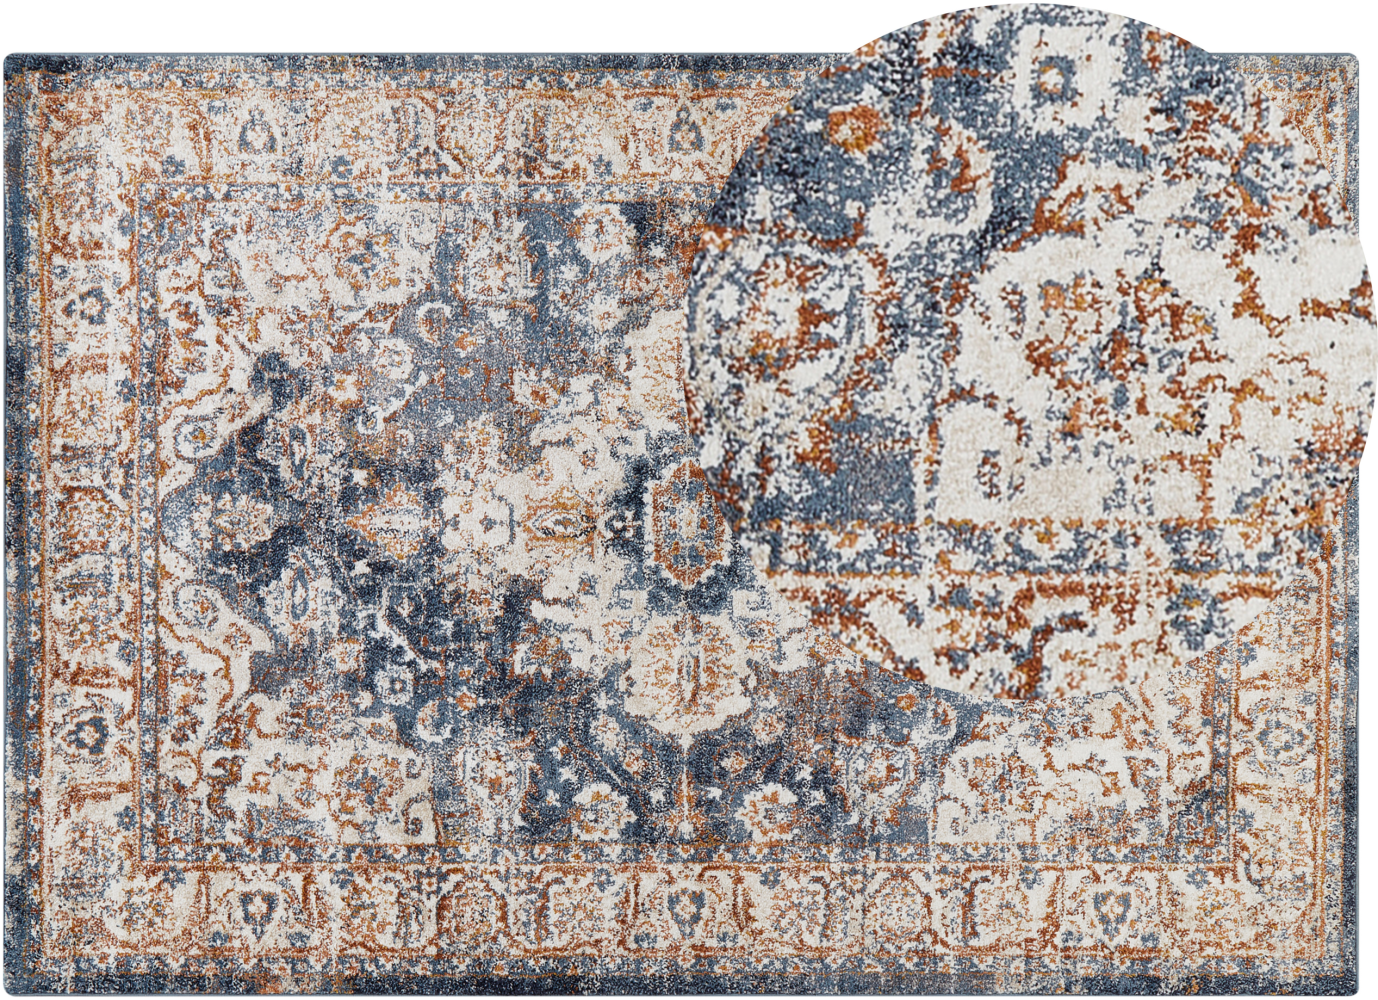 Teppich beige blau 160 x 230 cm orientalisches Muster Kurzflor DVIN Bild 1